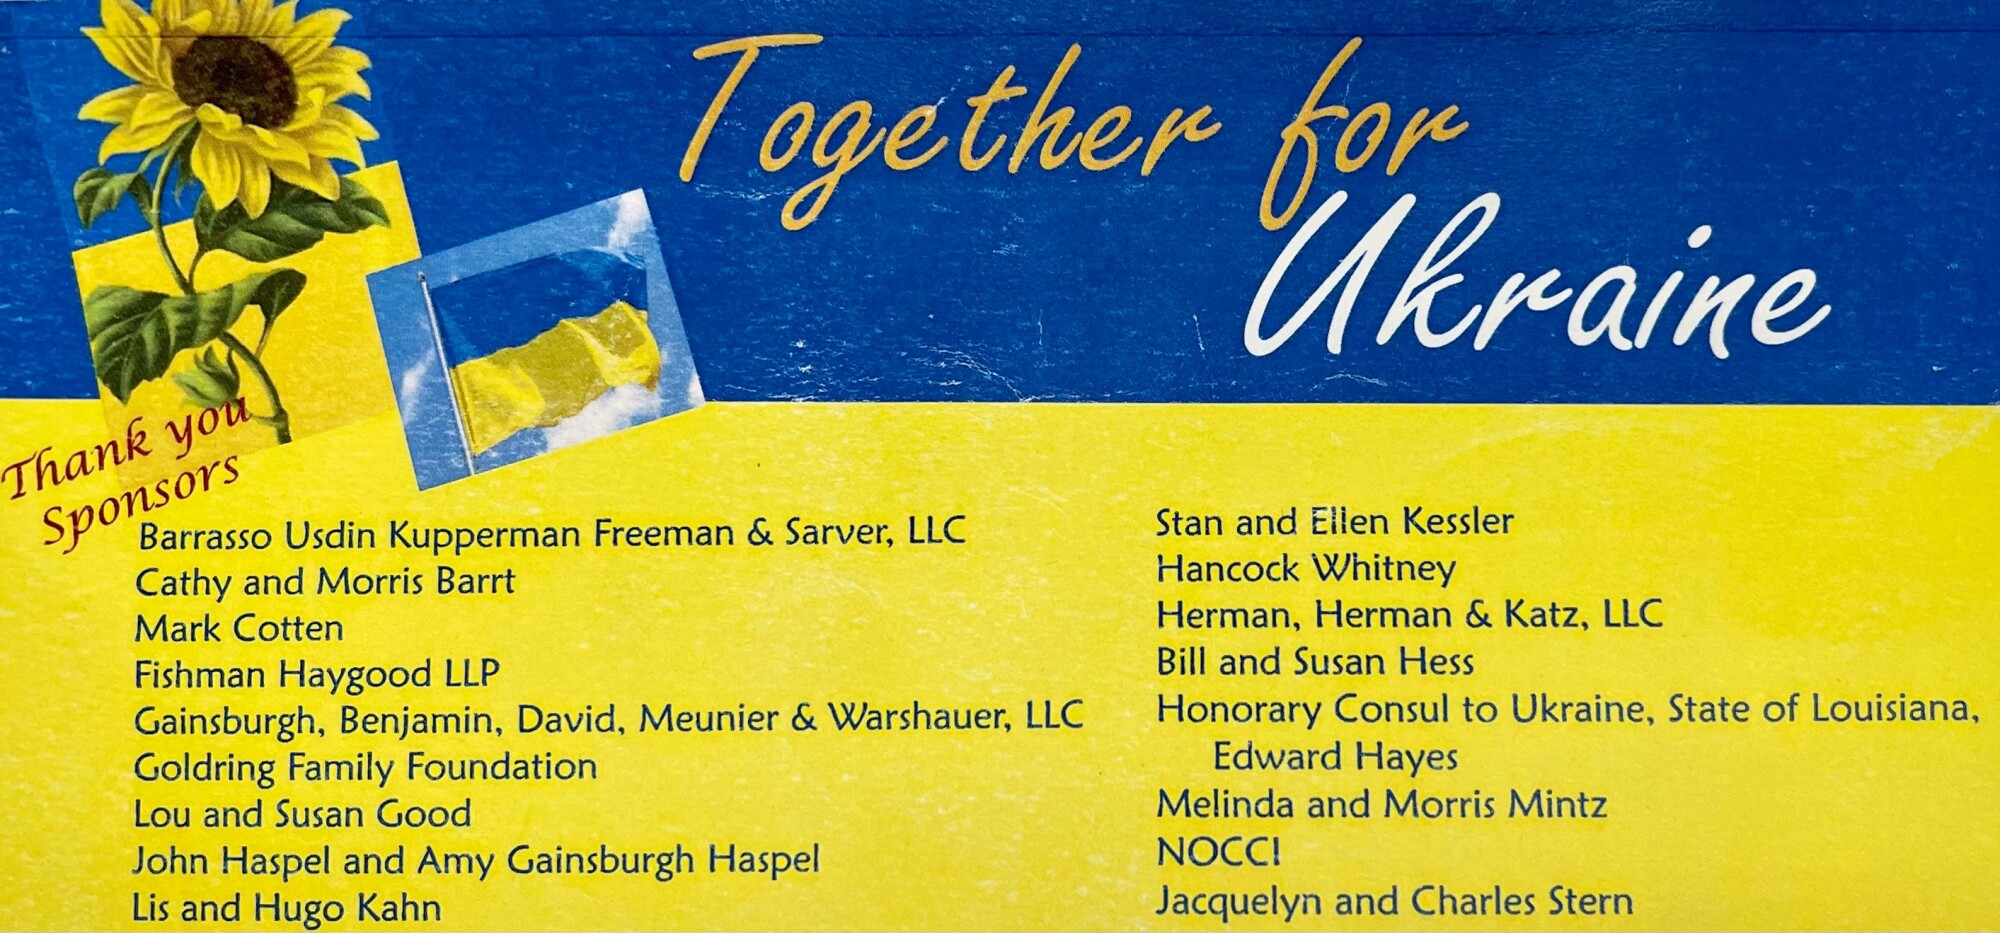 JCC Nola Together for Ukraine sponsors